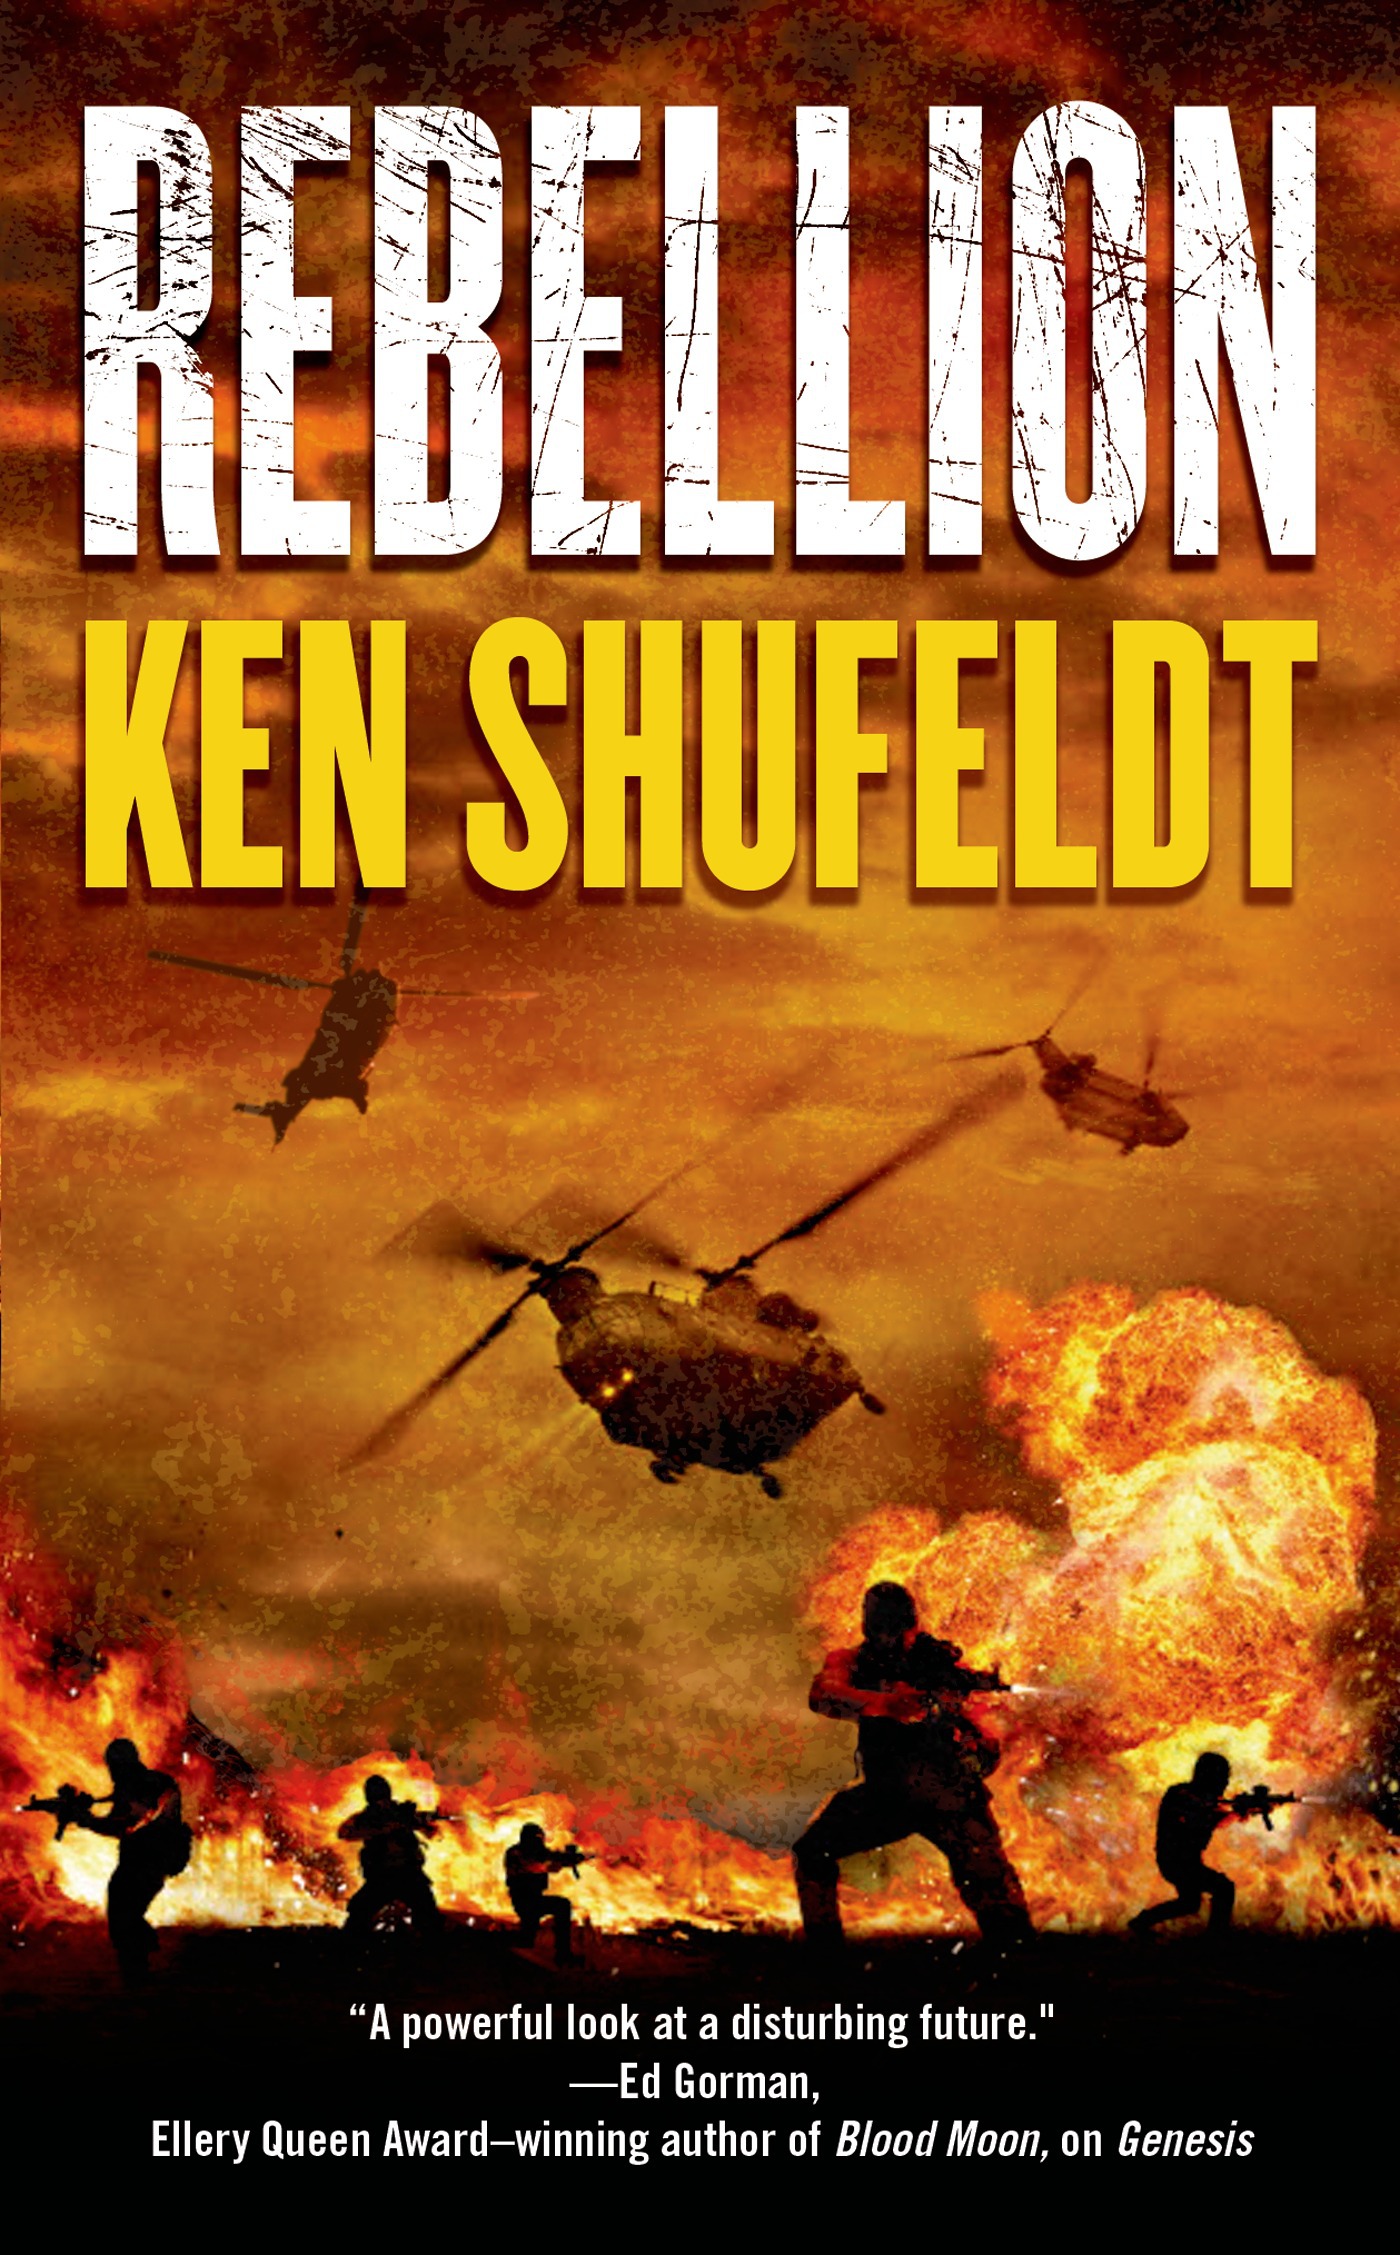 Rebellion by Ken Shufeldt